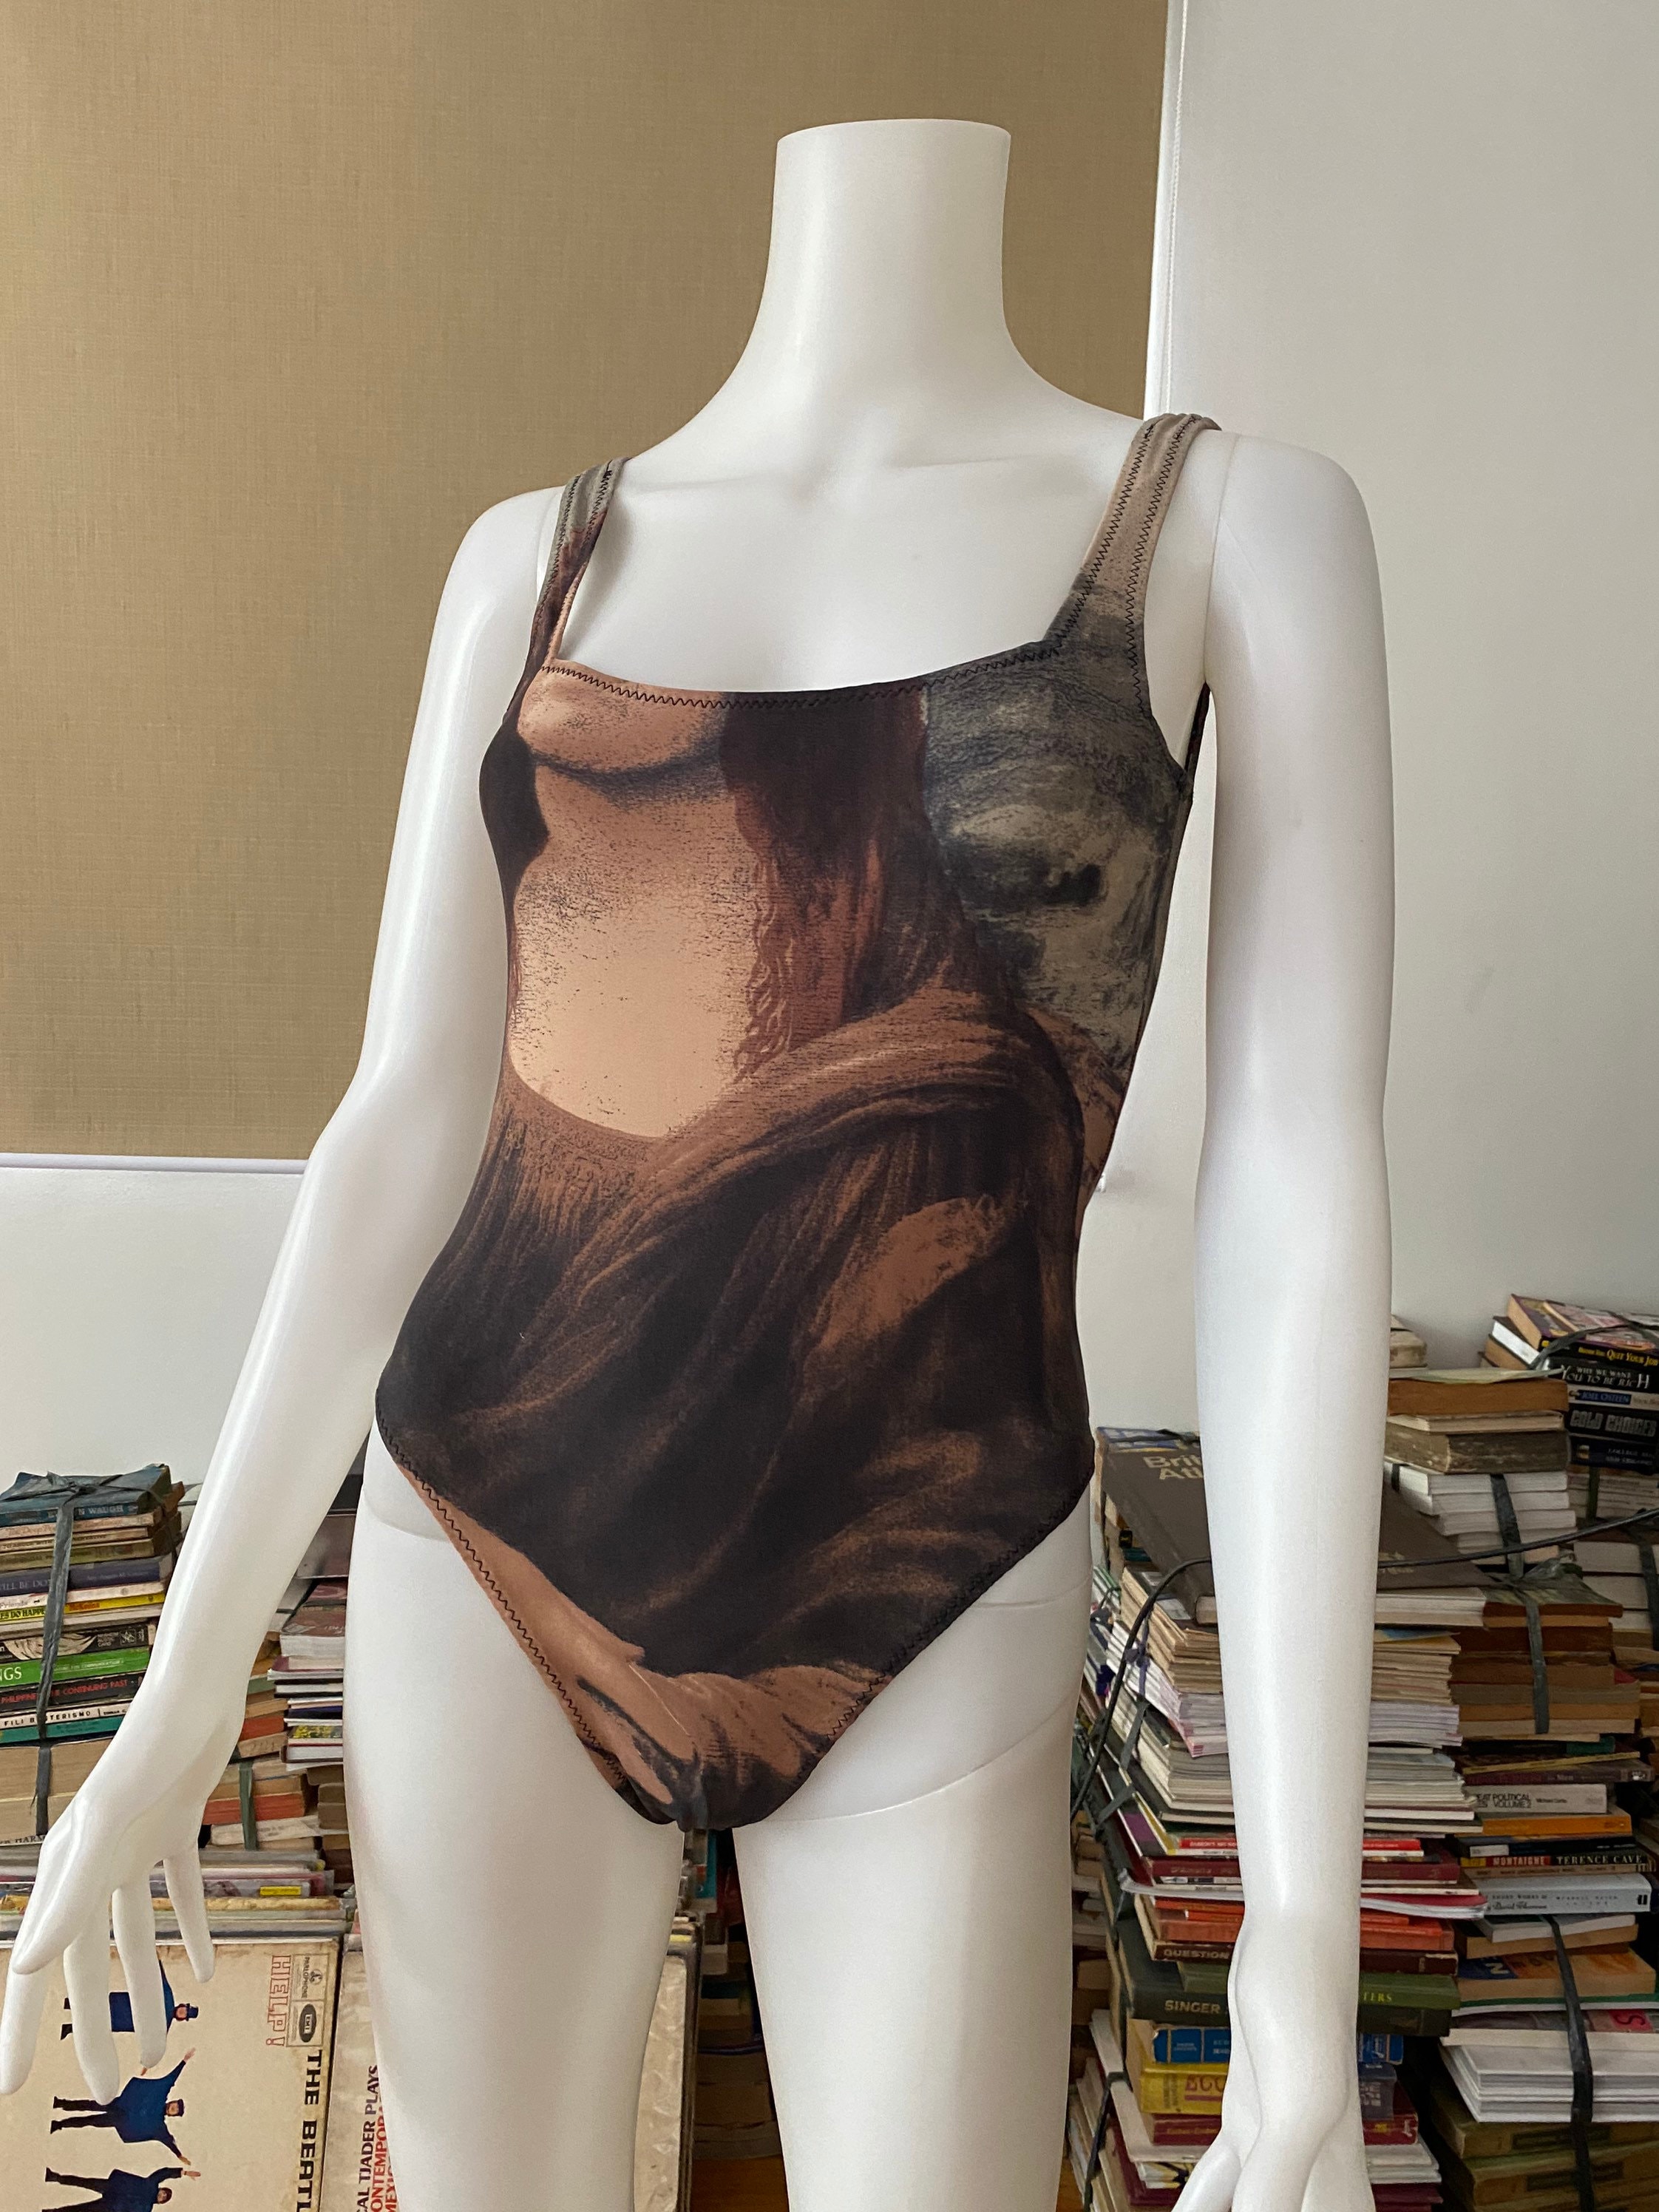 Kylie Jenner's Gucci monogram mesh lingerie